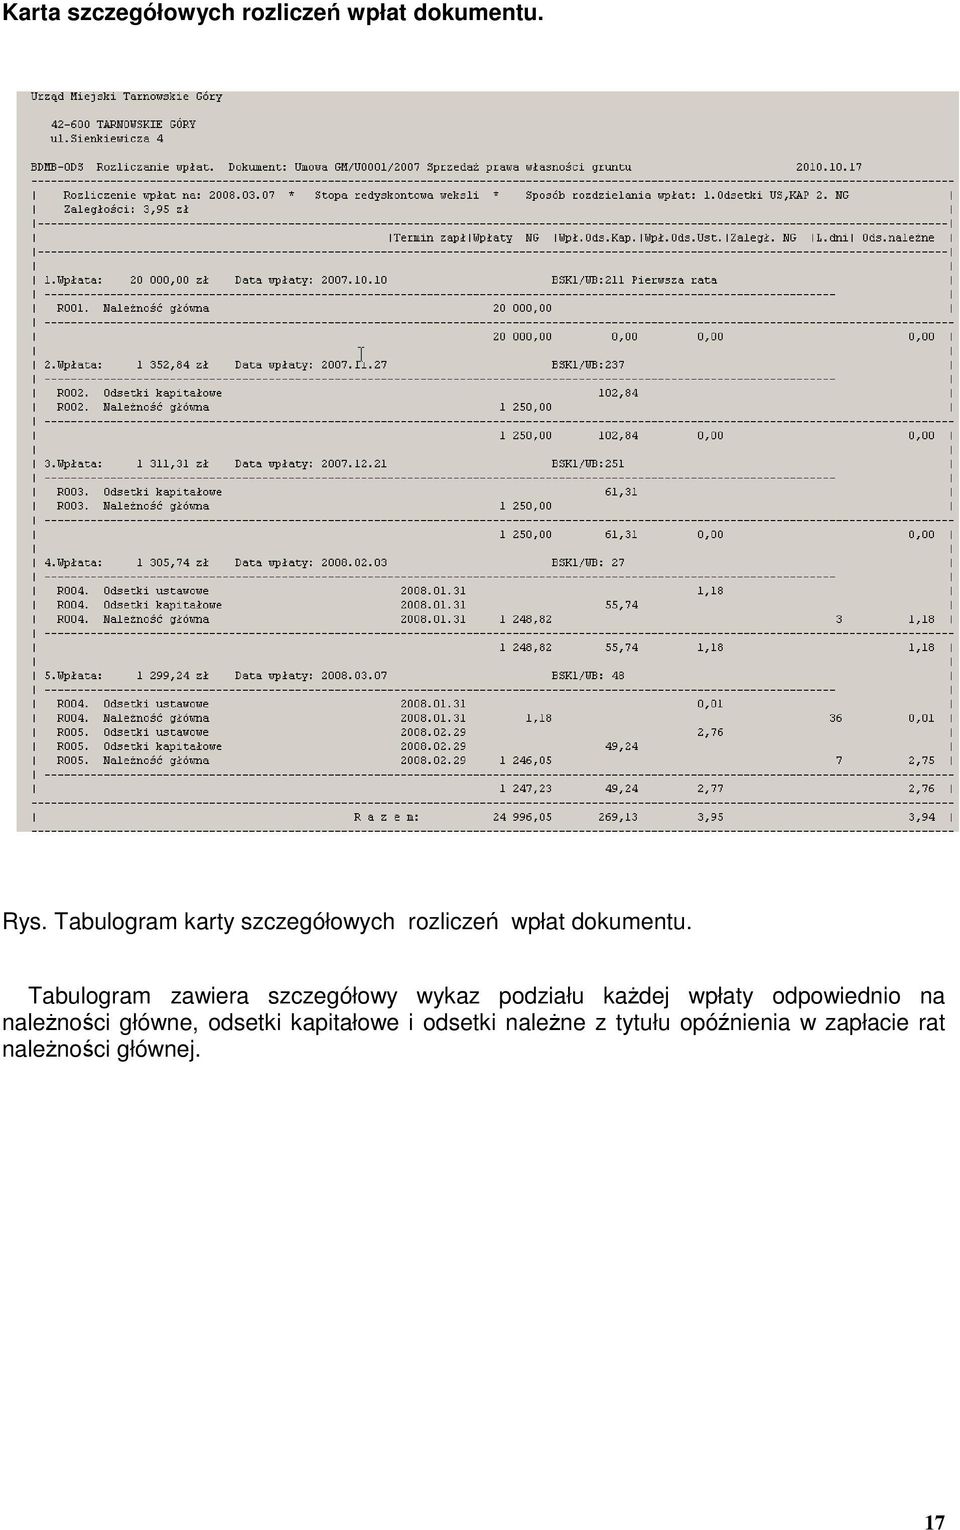 Tabulogram zawiera szczegółowy wykaz podziału kaŝdej wpłaty odpowiednio na